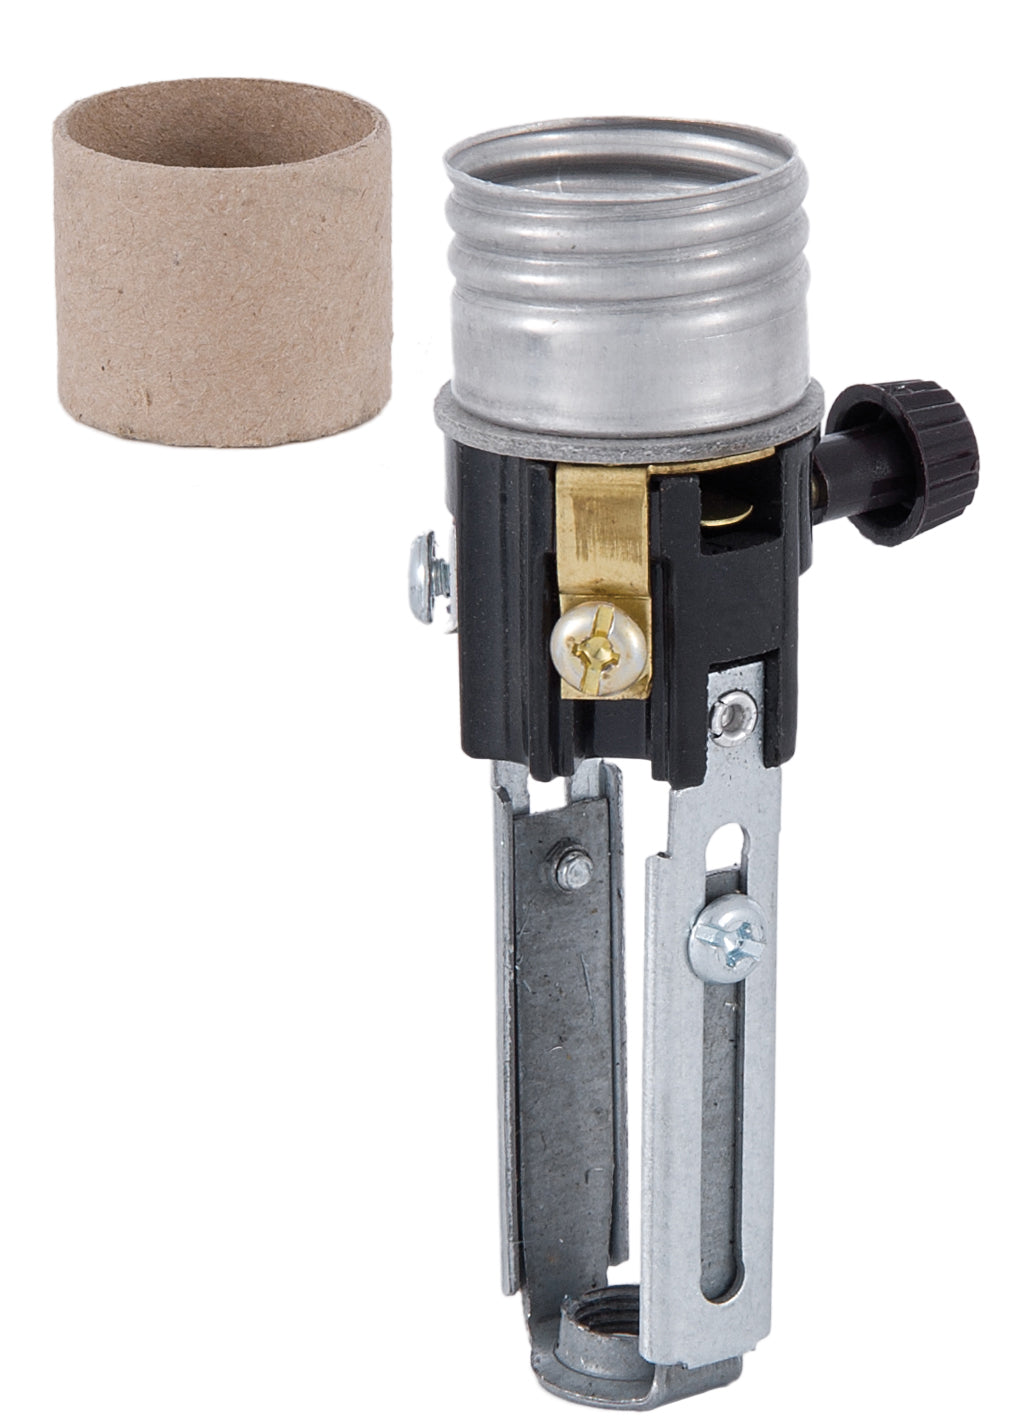 Medium Base, Adjustable Height (4" to 5-1/2"), On/Off Turn-knob Candle Socket